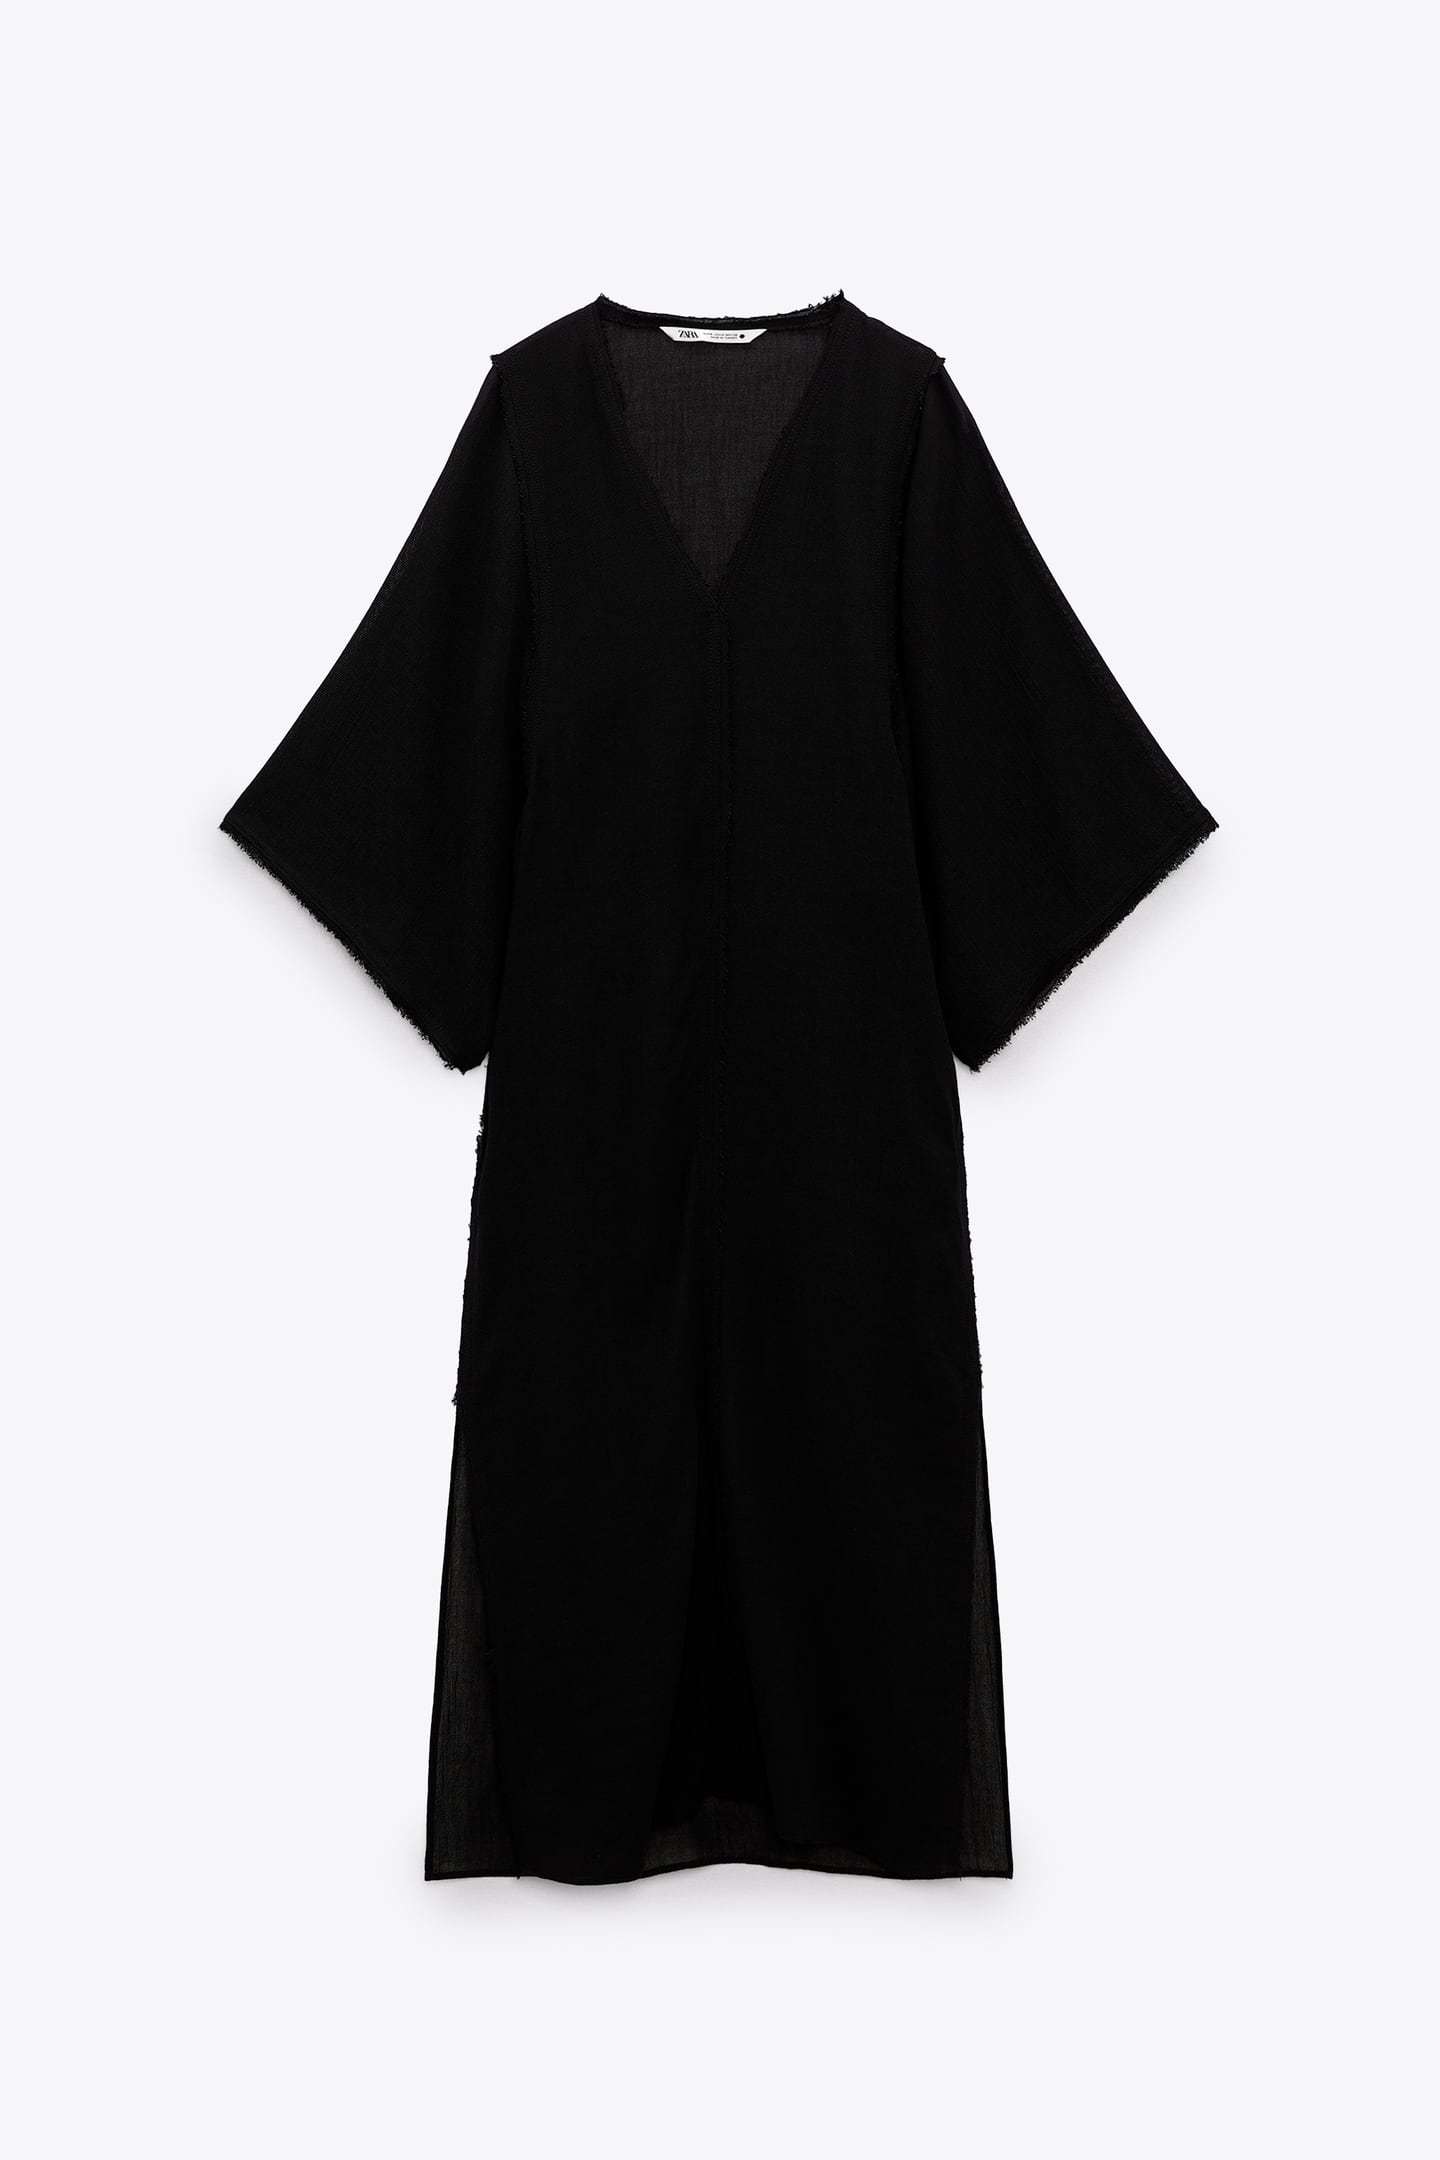 Vestido túnica negra de Zara.